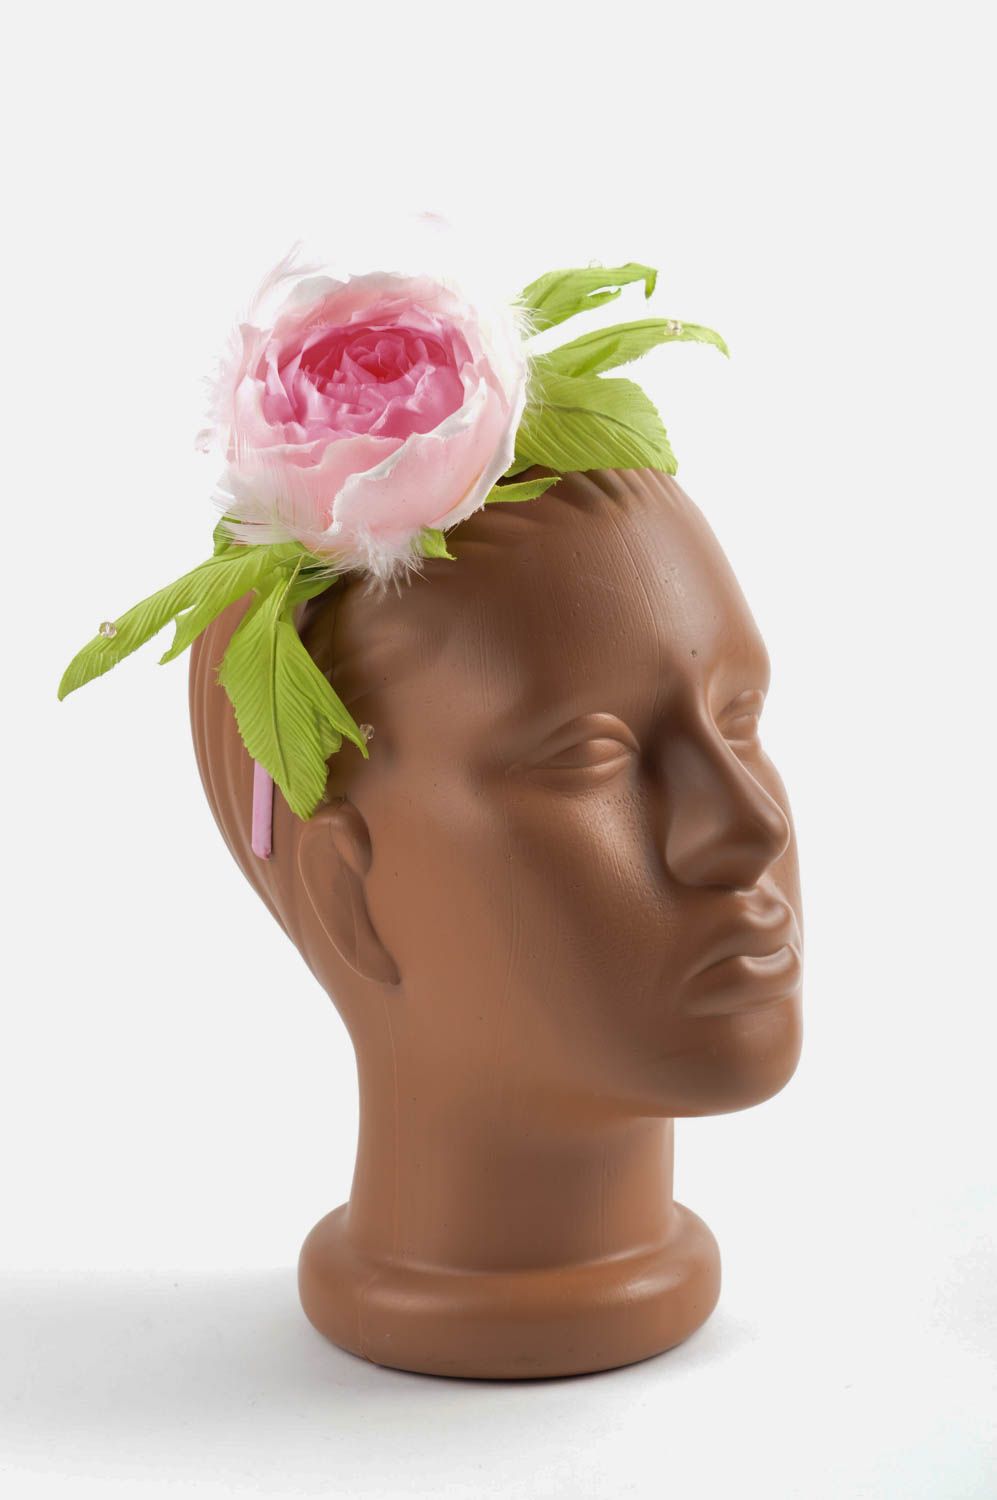 Аксессуар для волос хэнд мэйд обруч на голову обруч с цветком нежным пышным фото 1